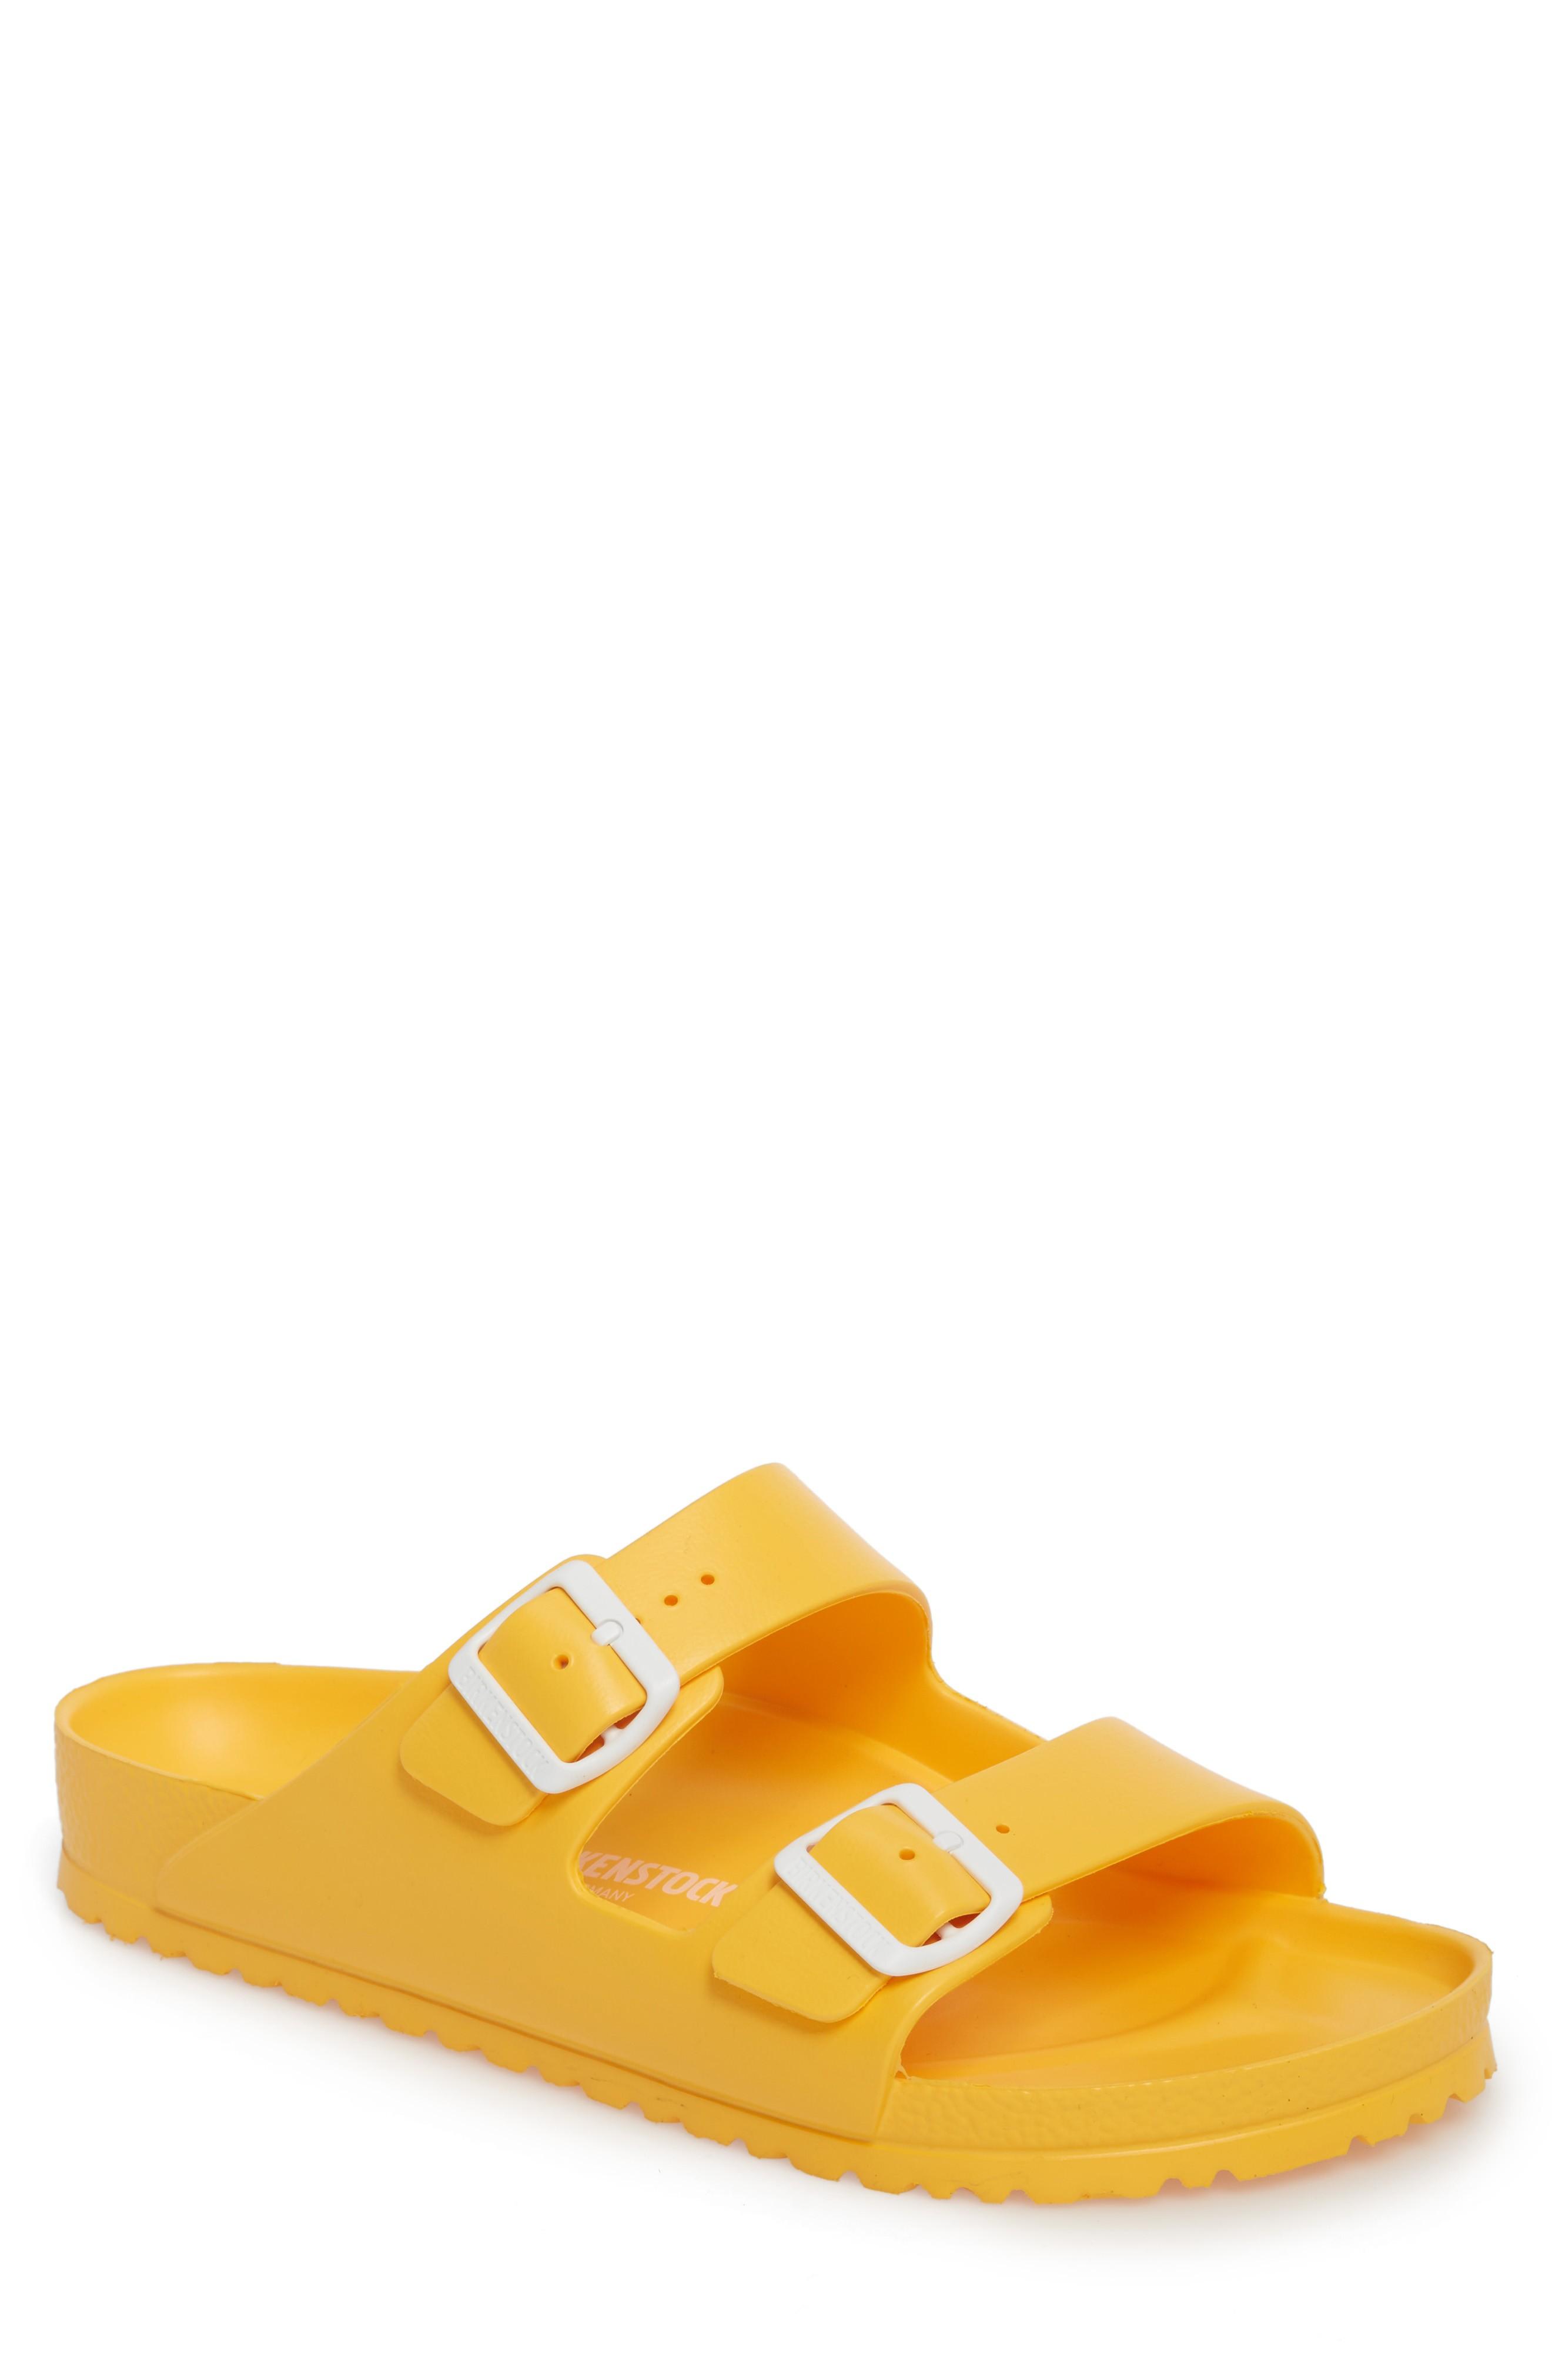 birkenstock essentials arizona eva waterproof slide sandal